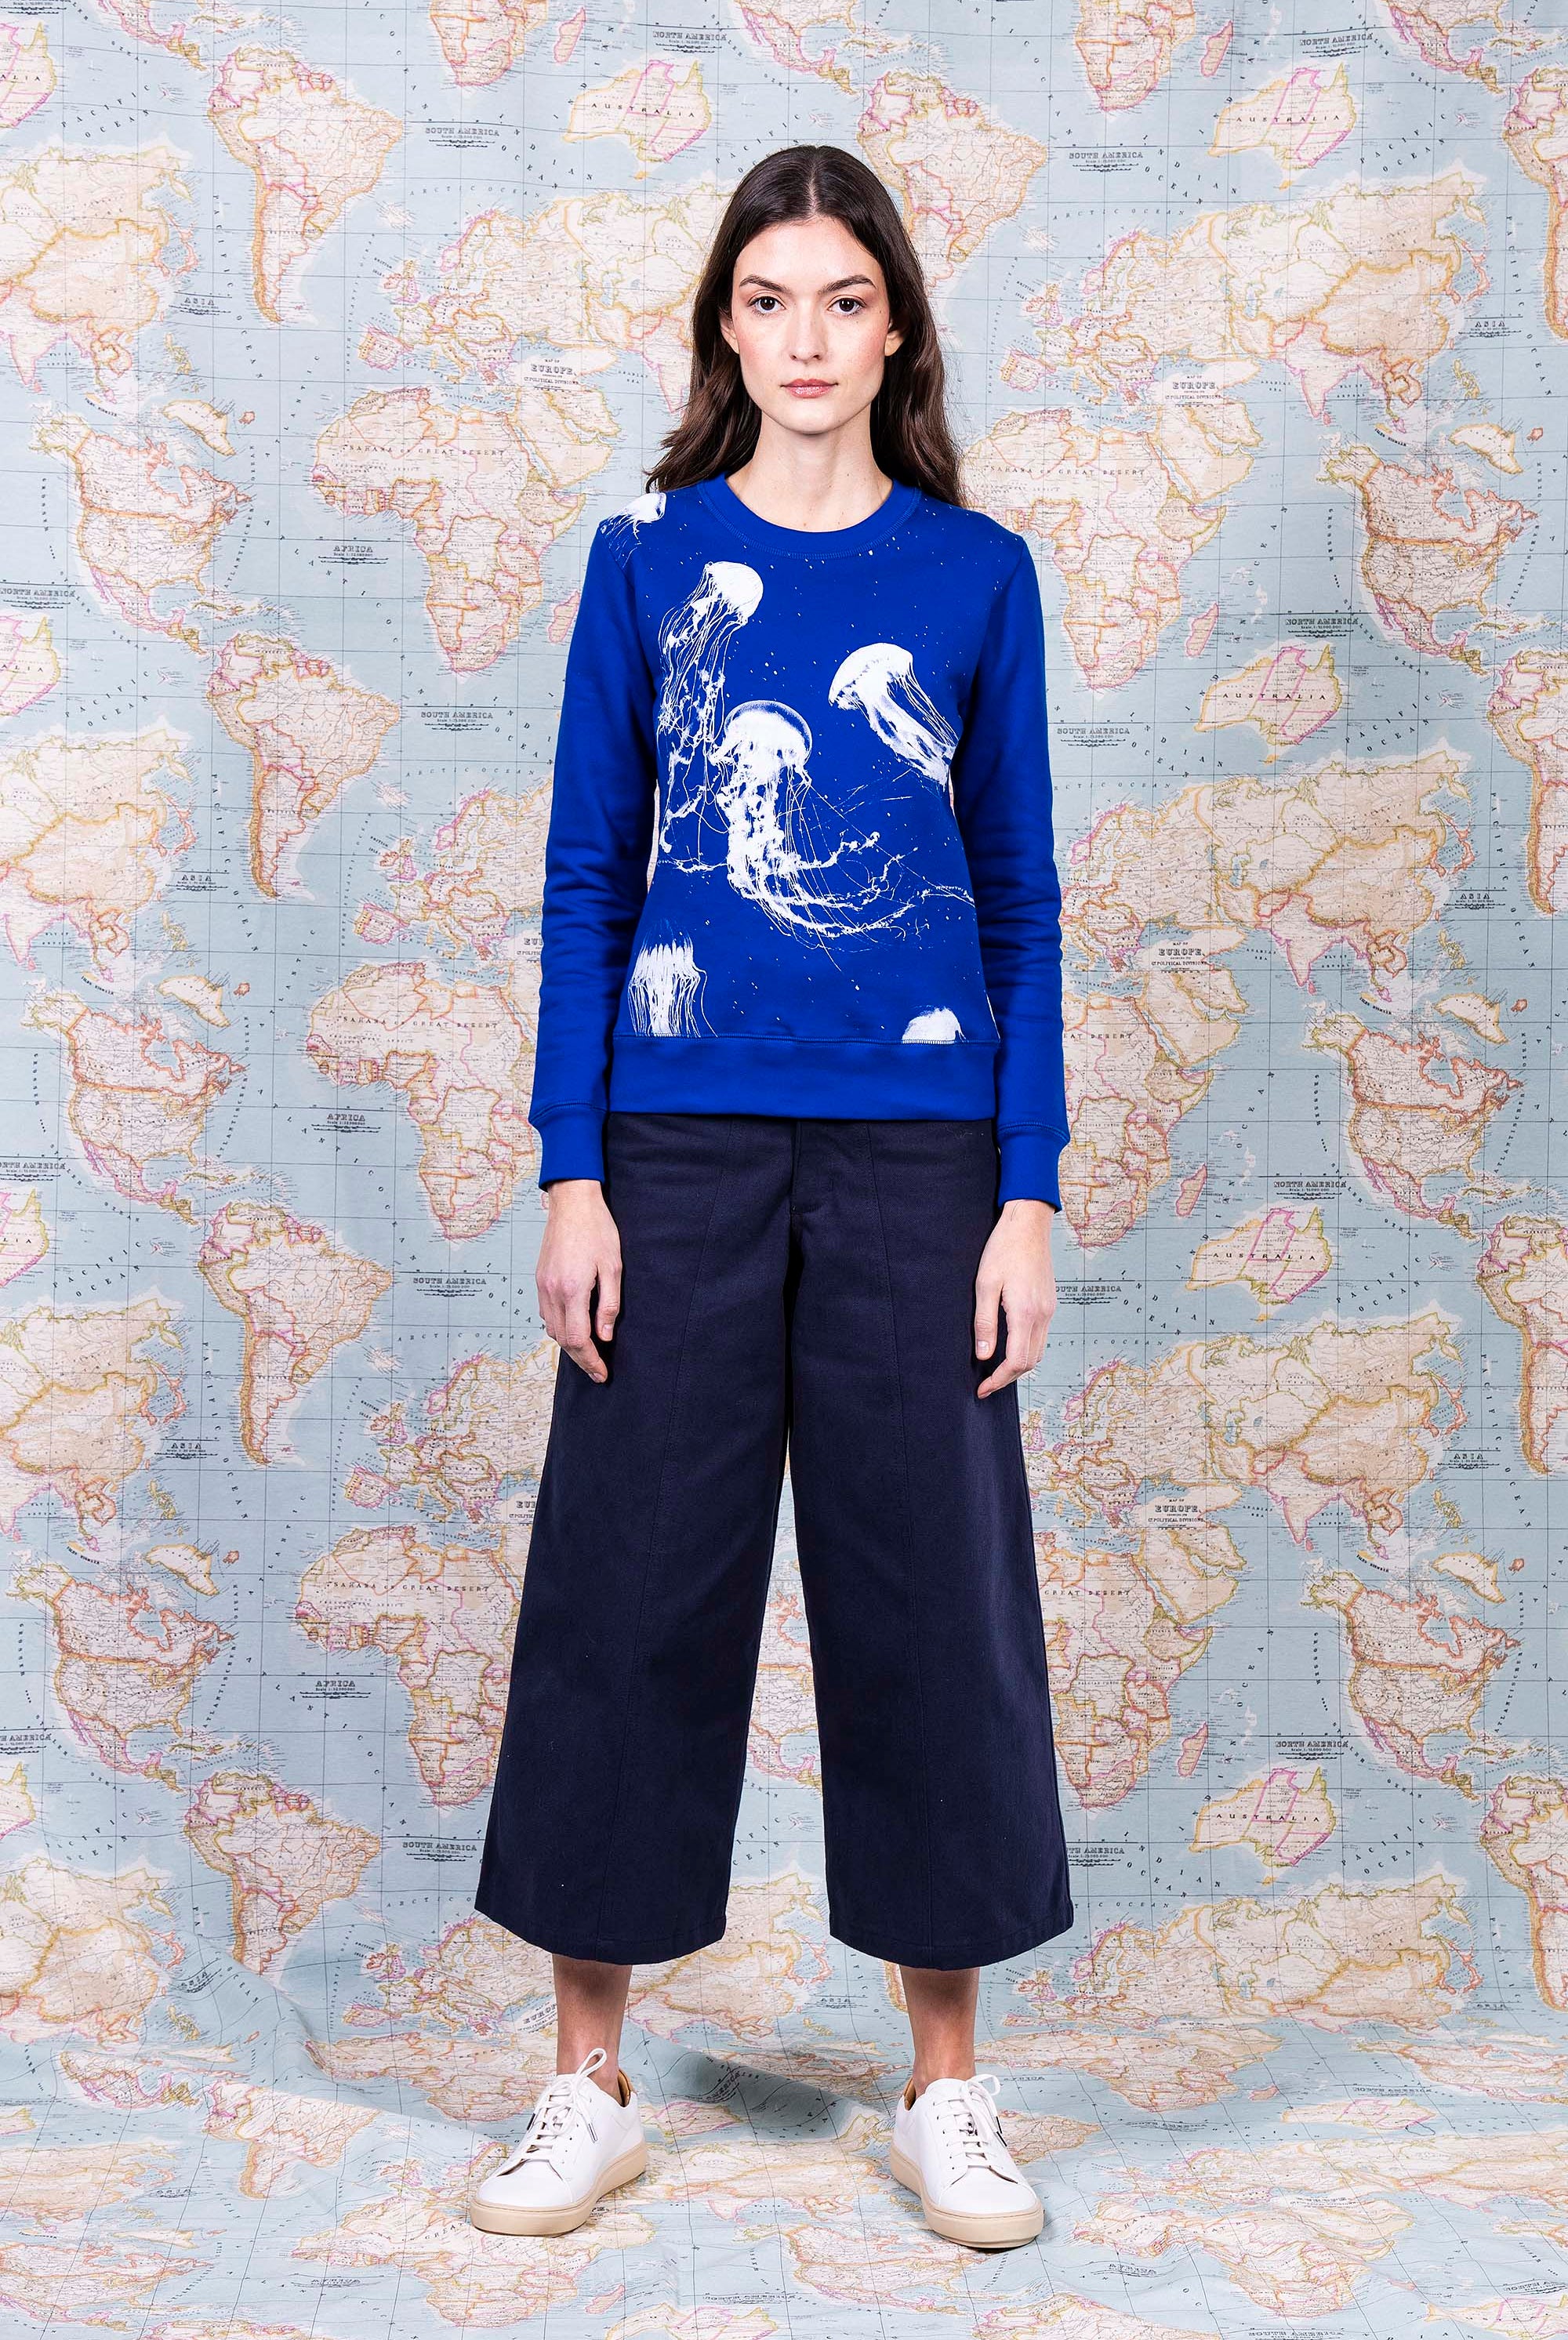 Sweatshirt Macarron Medusas Bleu Saphir sweatshirt femme, pièce basique et vêtement cocooning du quotidien